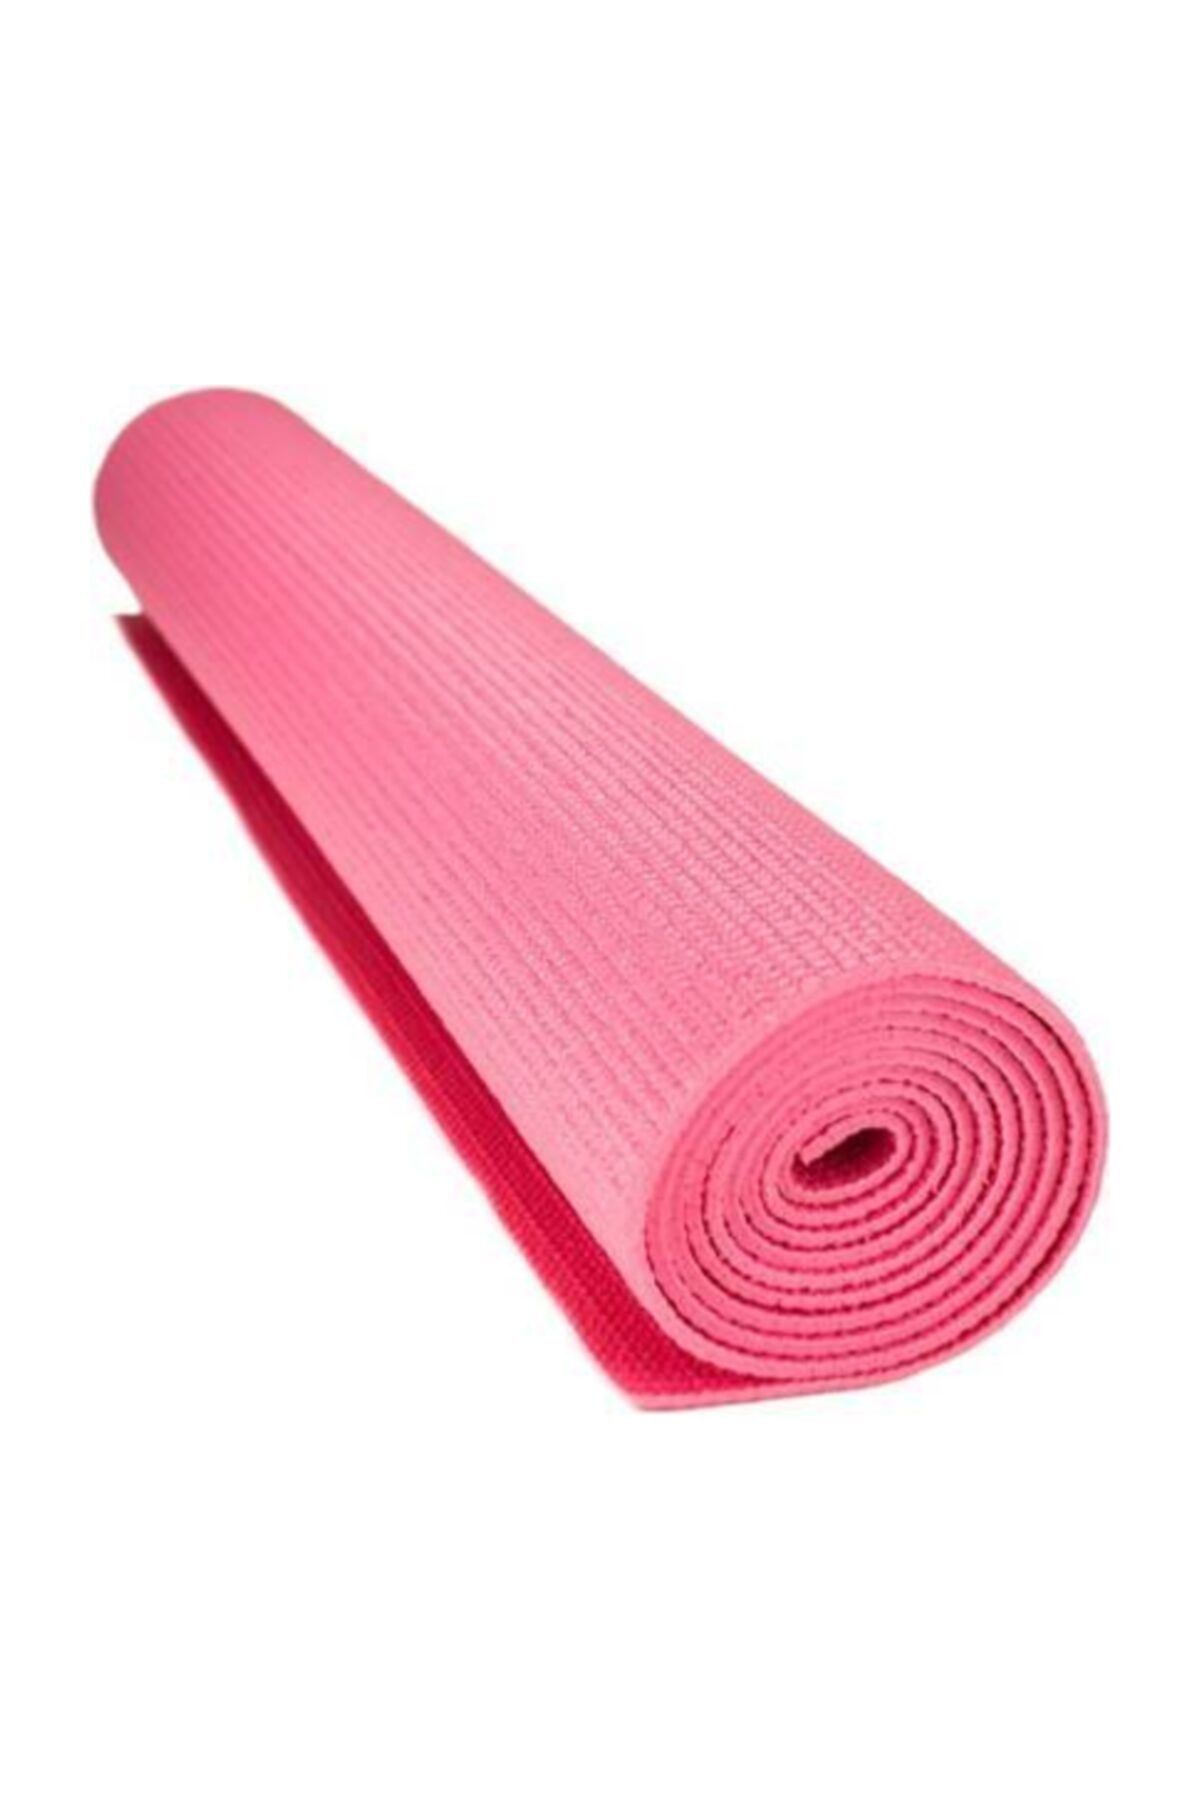 Коврик для йоги yoga. Коврик для йоги розовый. Гимнастический ковер. Коврик для фитнеса, розовый. Yoga mat коврик для йоги.